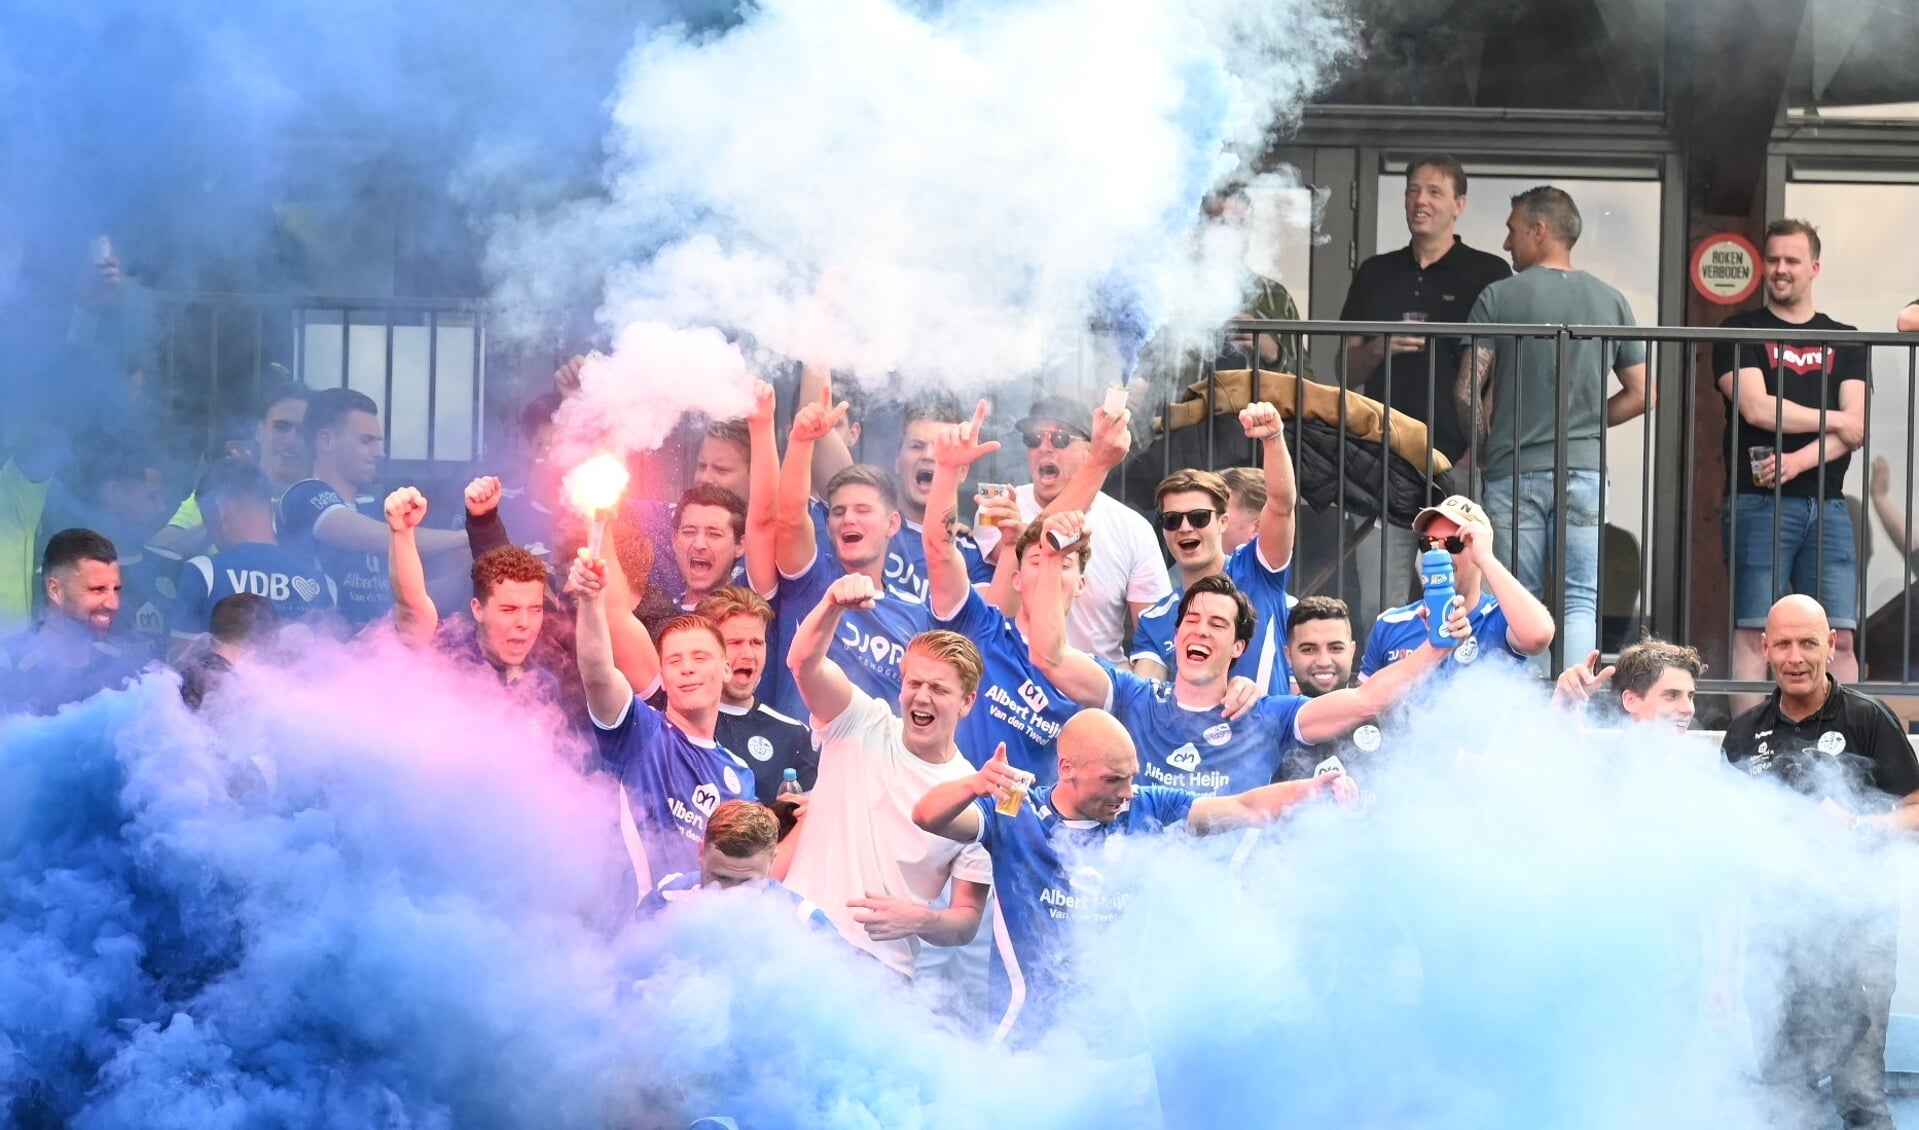 Veensche Boys heeft zich zaterdag 6 mei geplaatst voor de finale van de KNVB-districtsbeker.